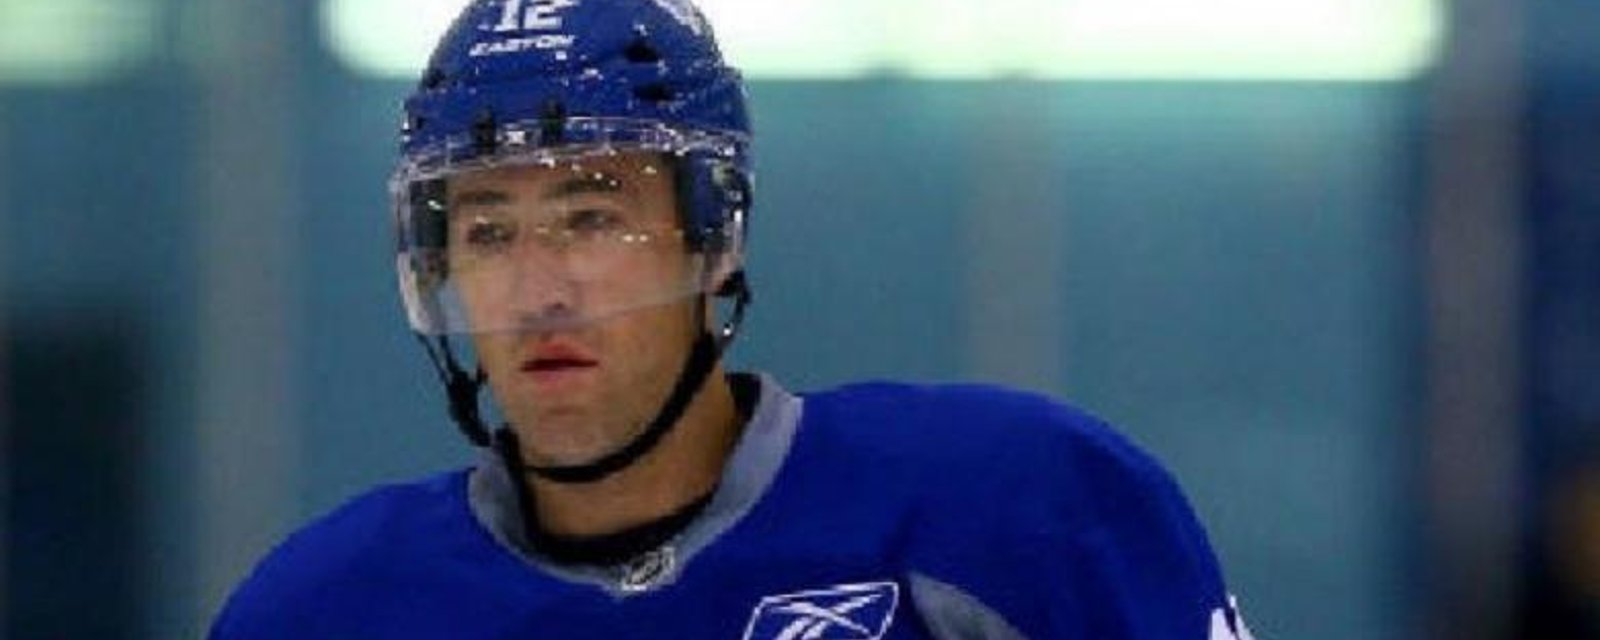 Stephane Robidas will make his Leafs debut tomorrow night!